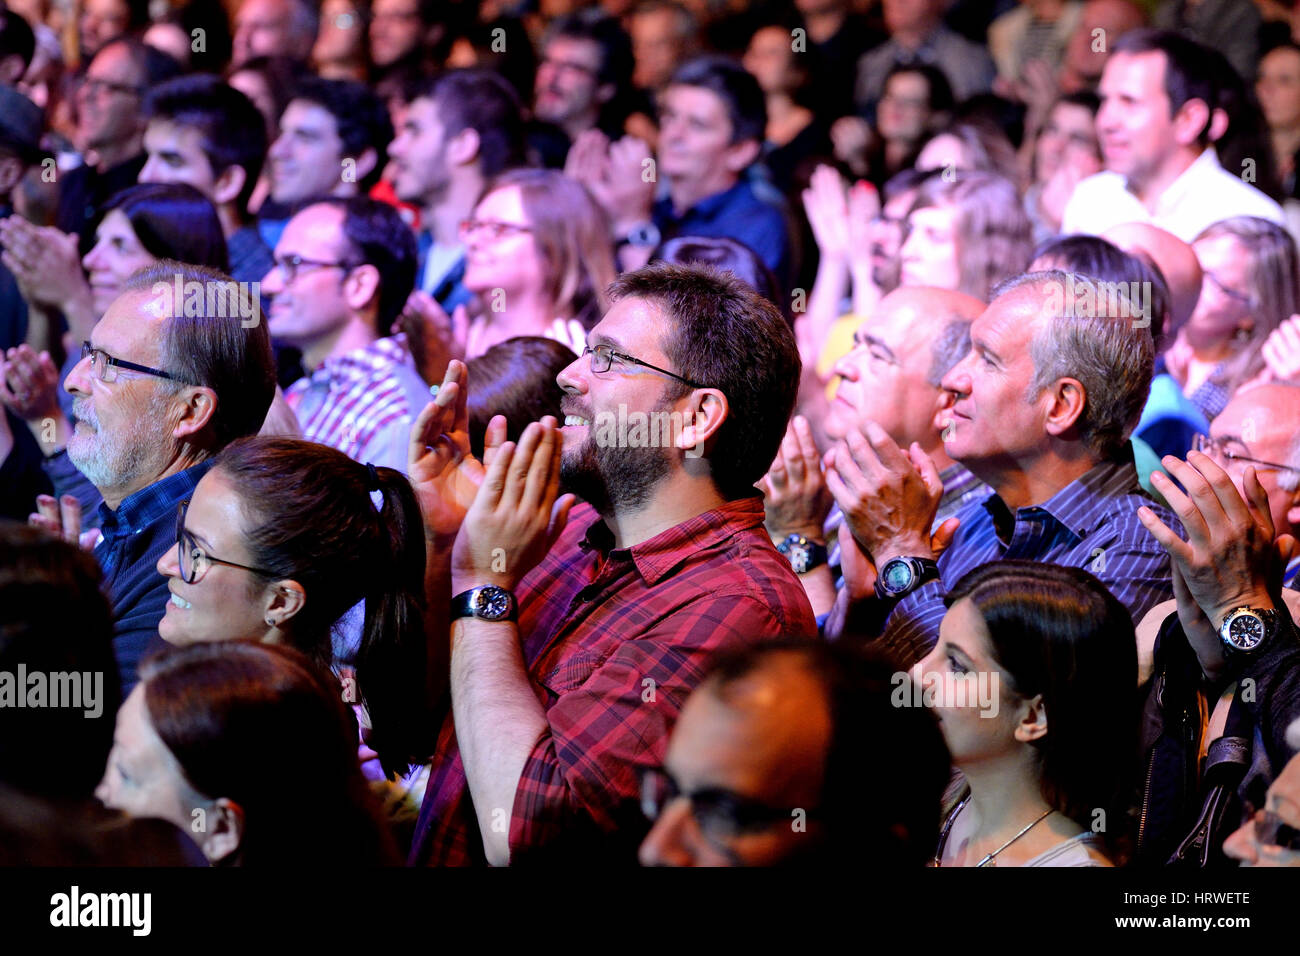 Barcelone - APR 16 : foule dans un concert à Luz de Gas club le 16 avril 2015 à Barcelone, Espagne. Banque D'Images